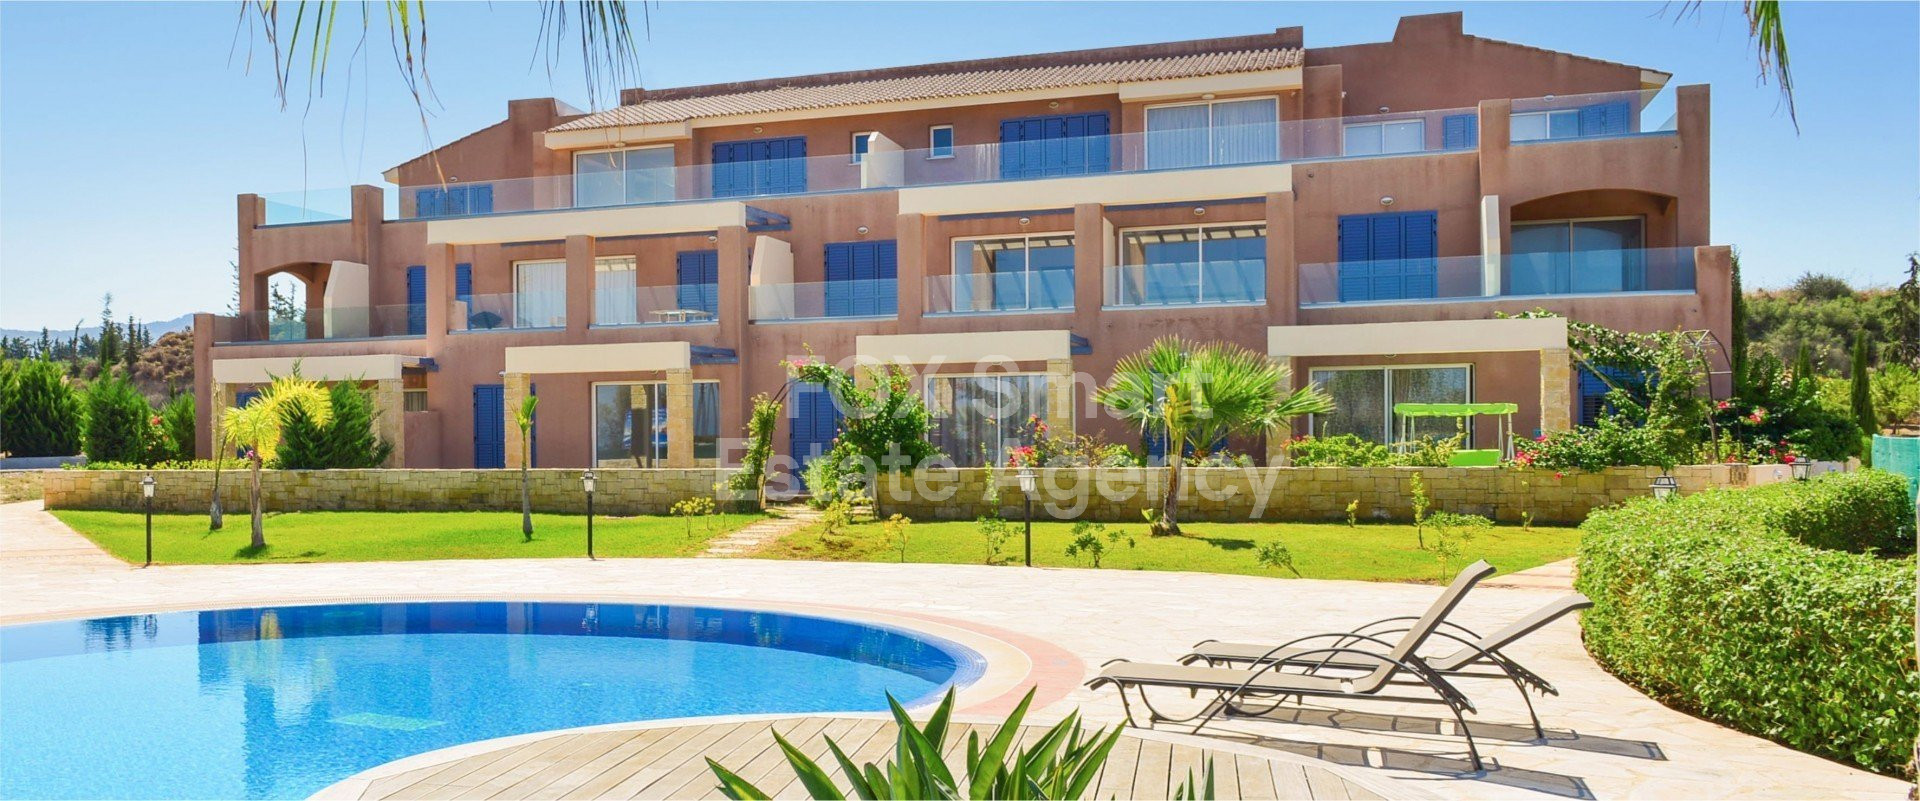 Apartment, For Sale, Paphos, Polis Chrysochous  2 Bedrooms 2.....